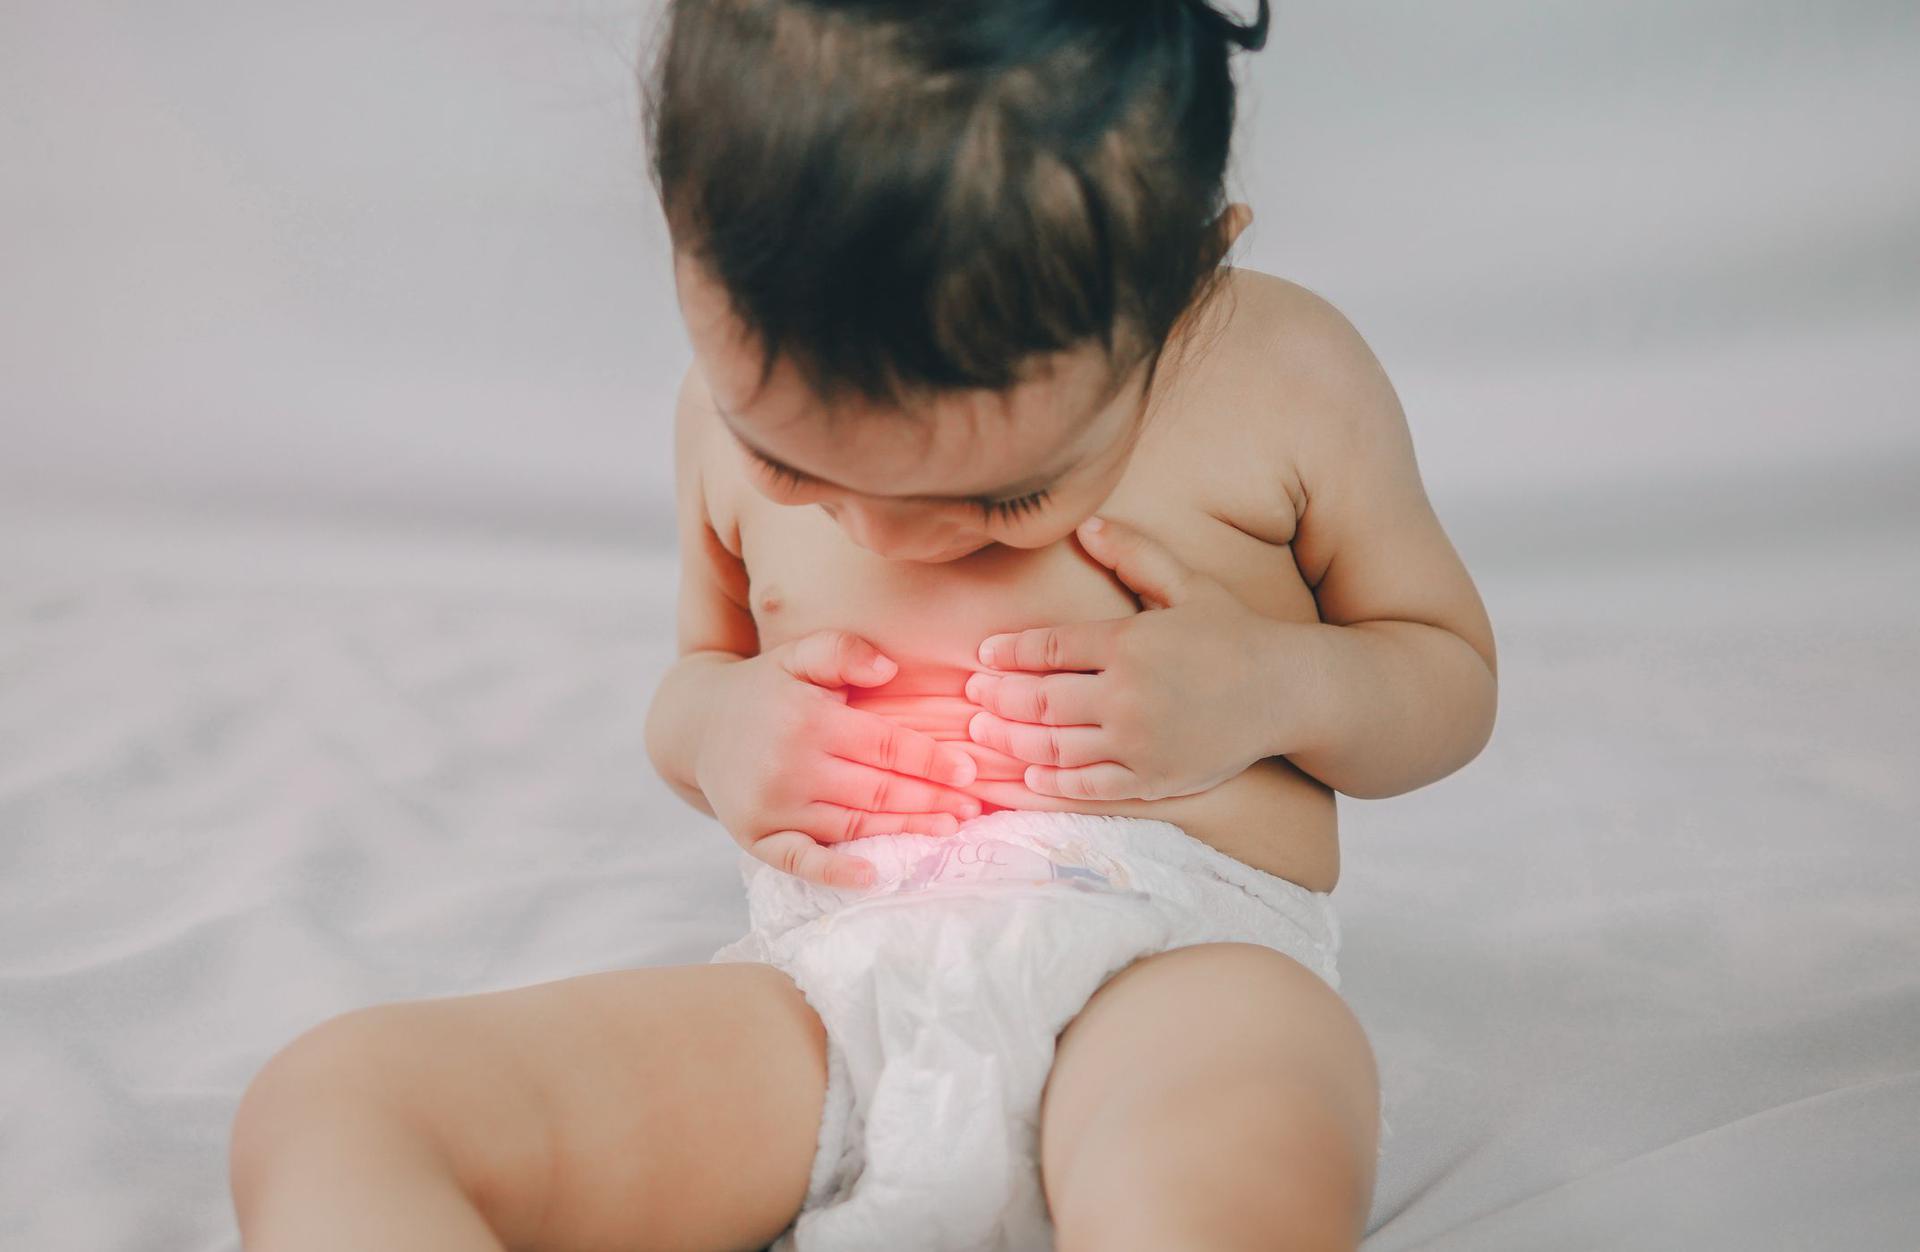 Ответы к тестам НМО: "Анатомо-физиологические особенности и аномалии развития, определяющие основные симптомы и синдромы поражения органов пищеварения у детей раннего возраста"